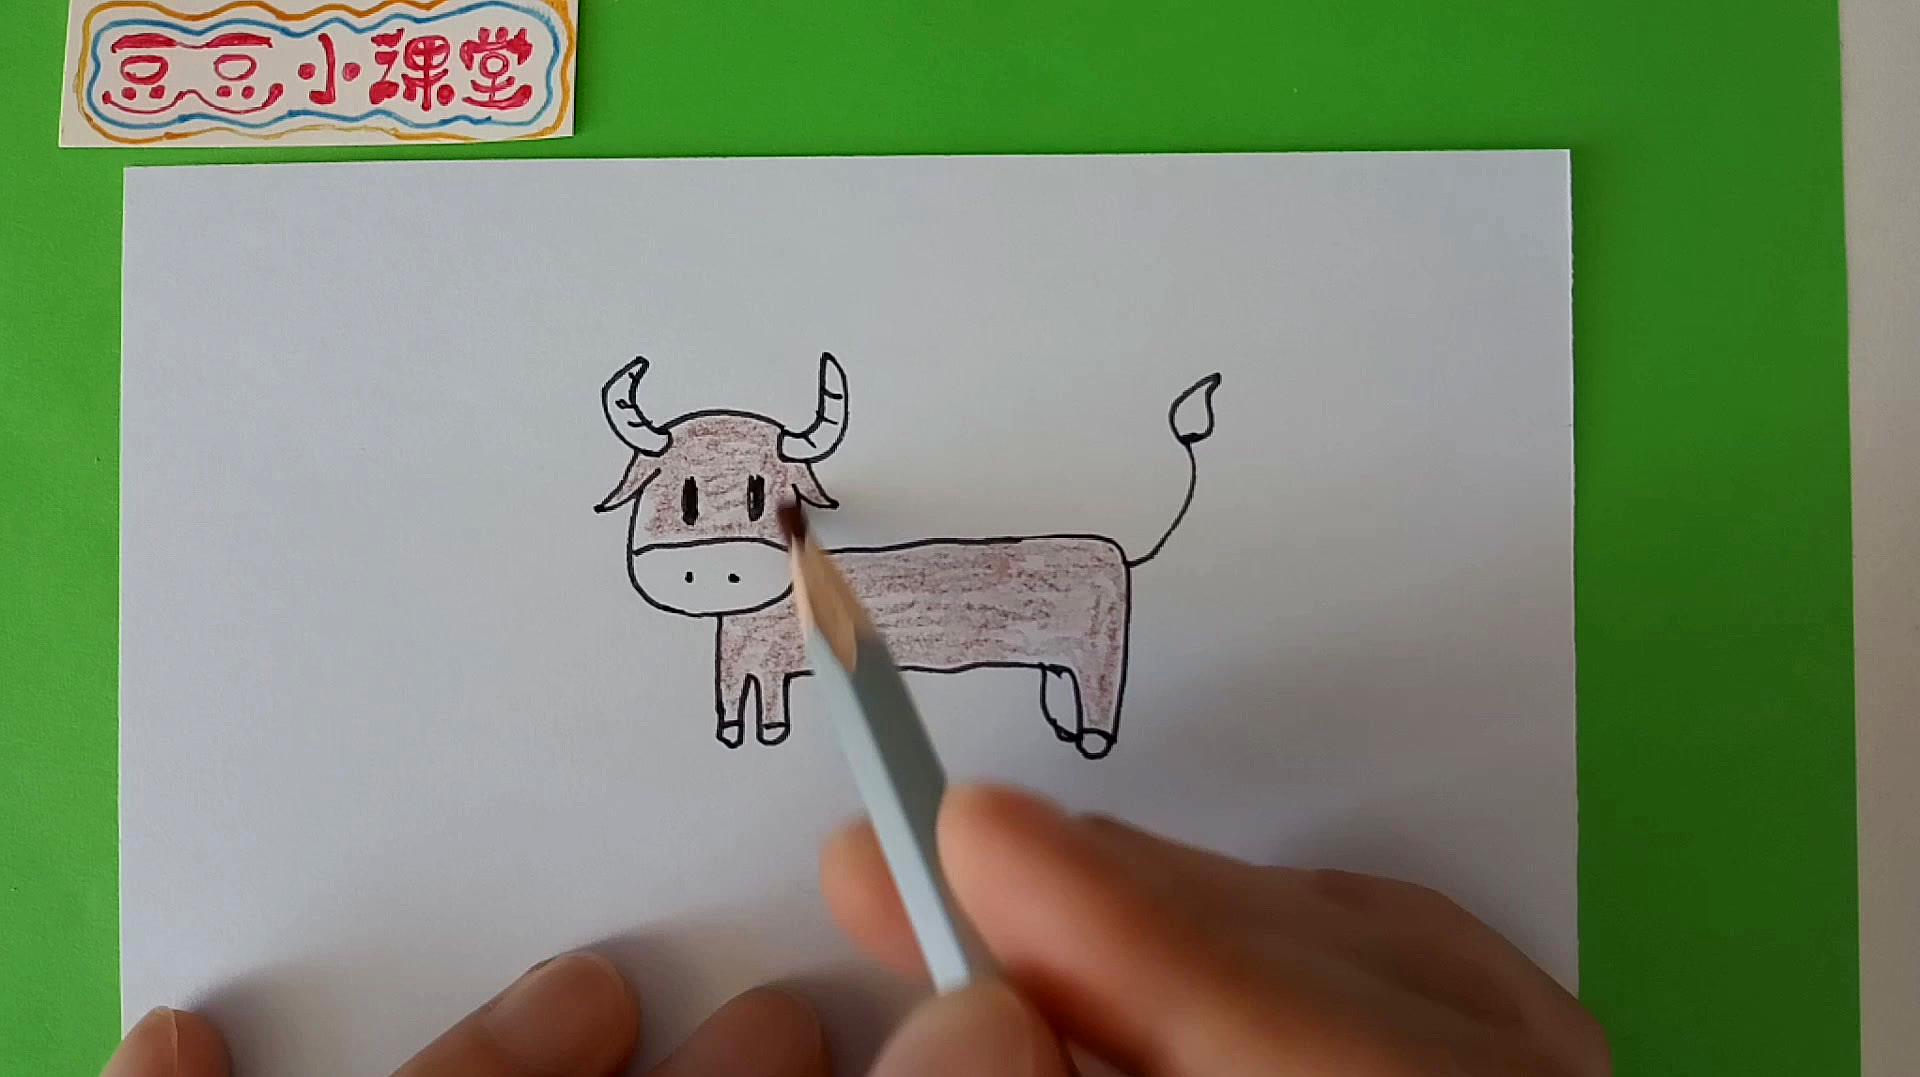 数字创意简笔画,用数字7画一头牛